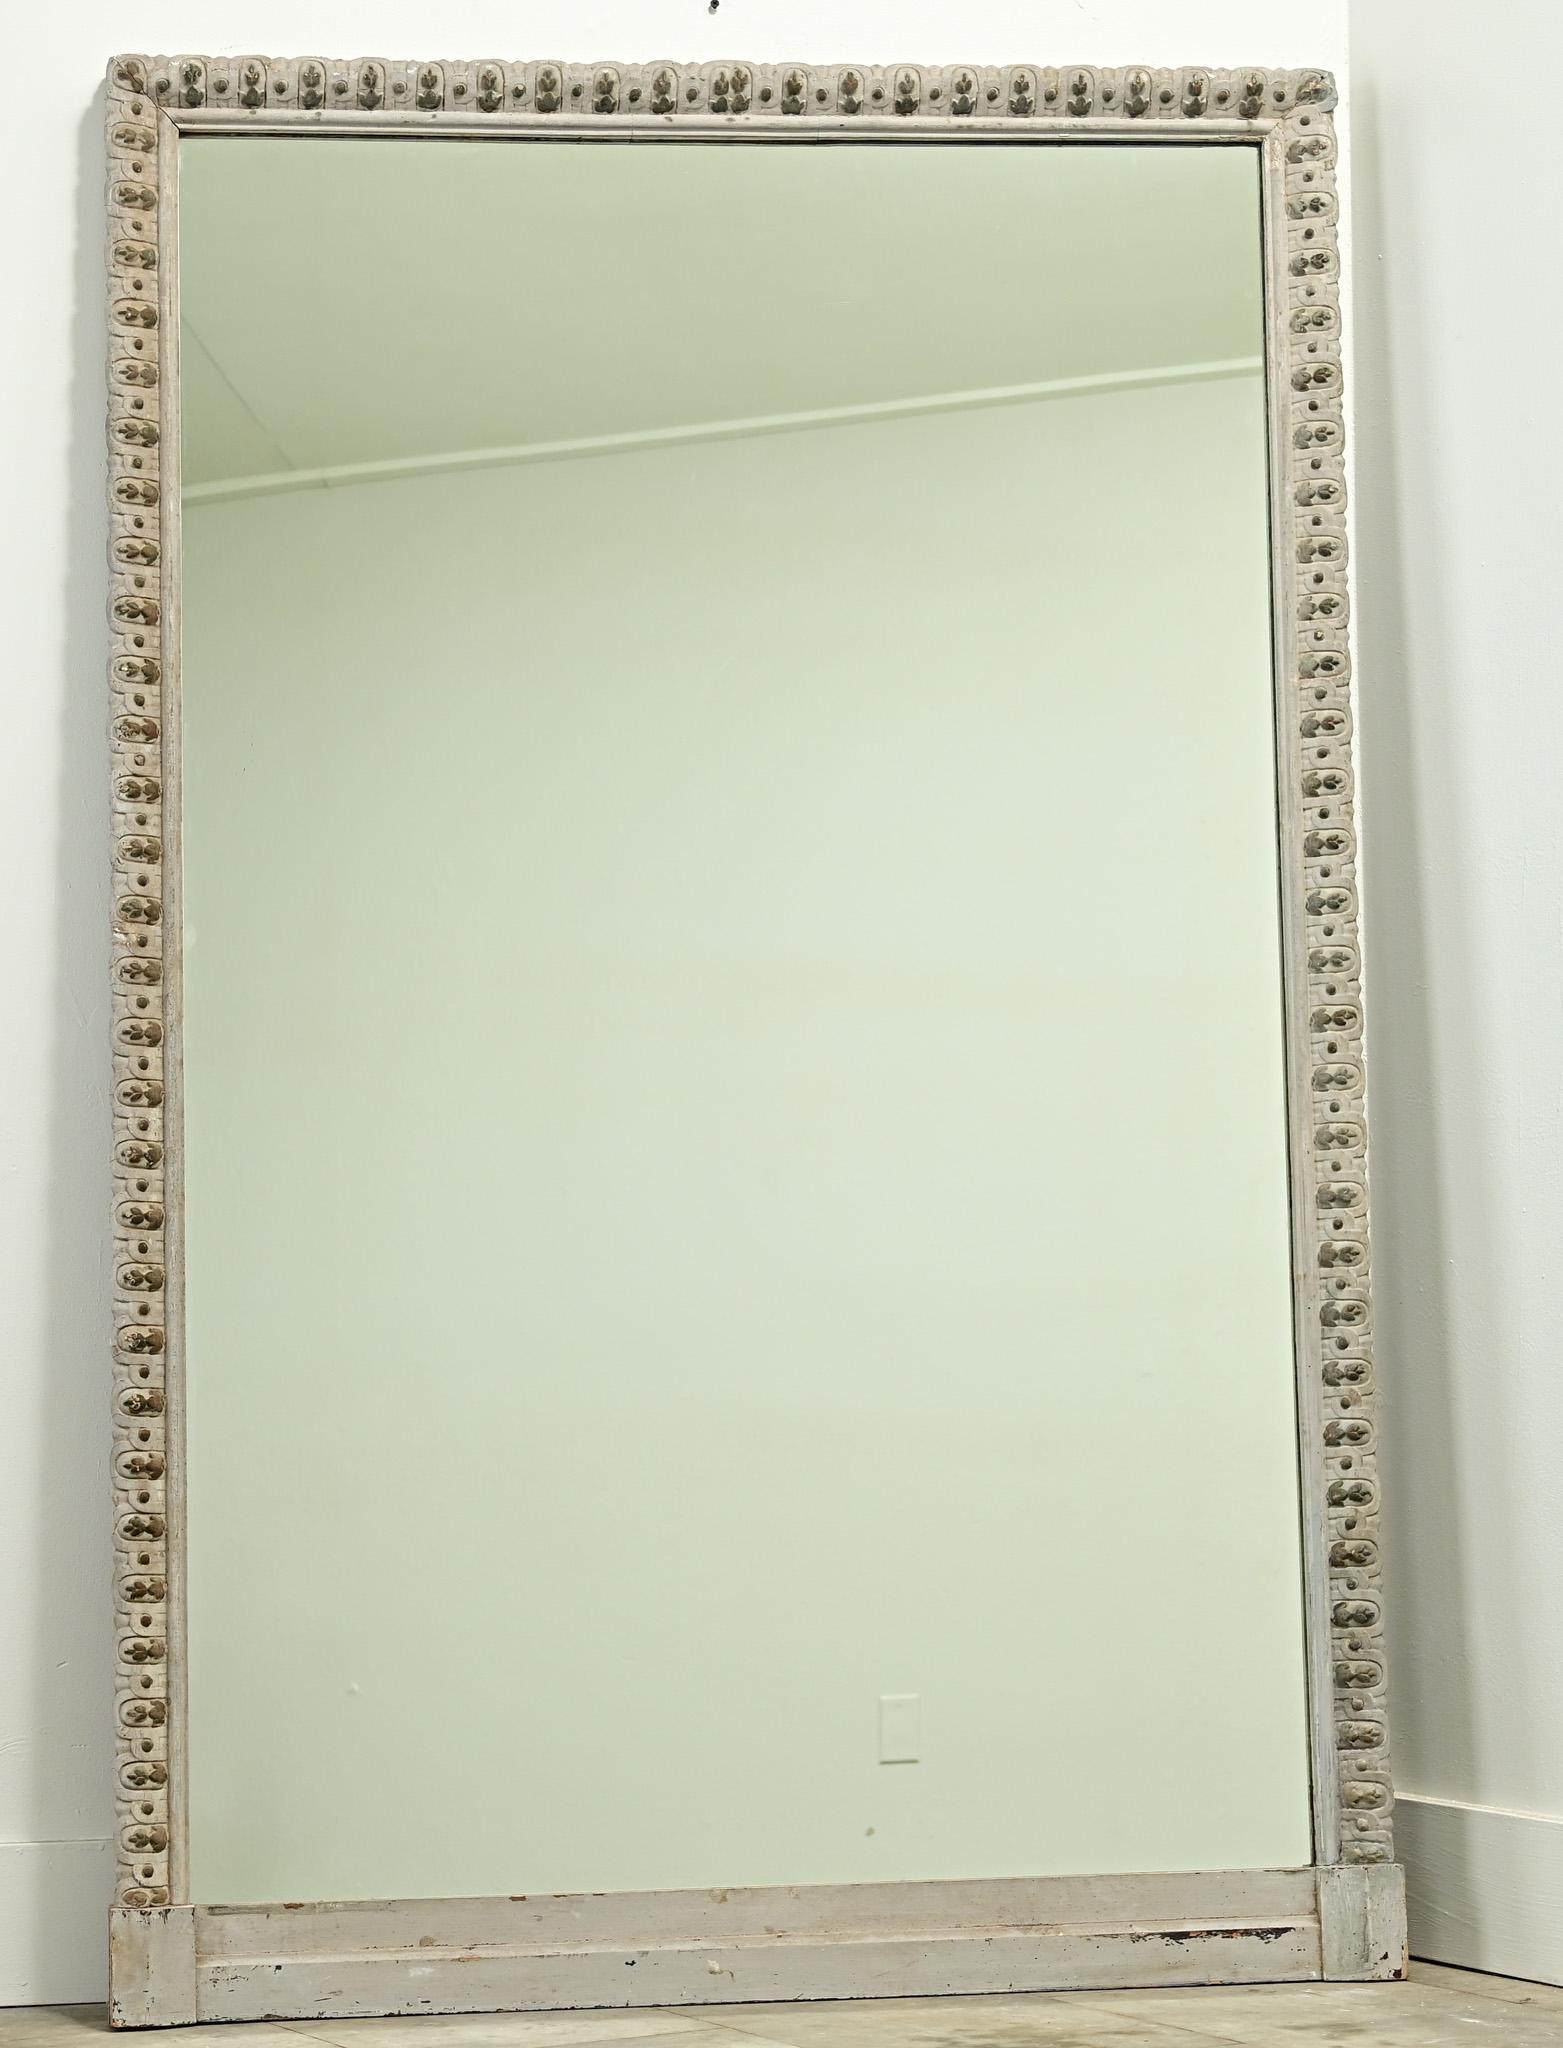 Un grand cadre de miroir de cheminée français sculpté et peint des années 1800 est doté d'une nouvelle plaque de miroir. Le cadre sculpté présente une peinture d'origine usée et un motif décoratif en forme de perles. Assurez-vous de regarder les